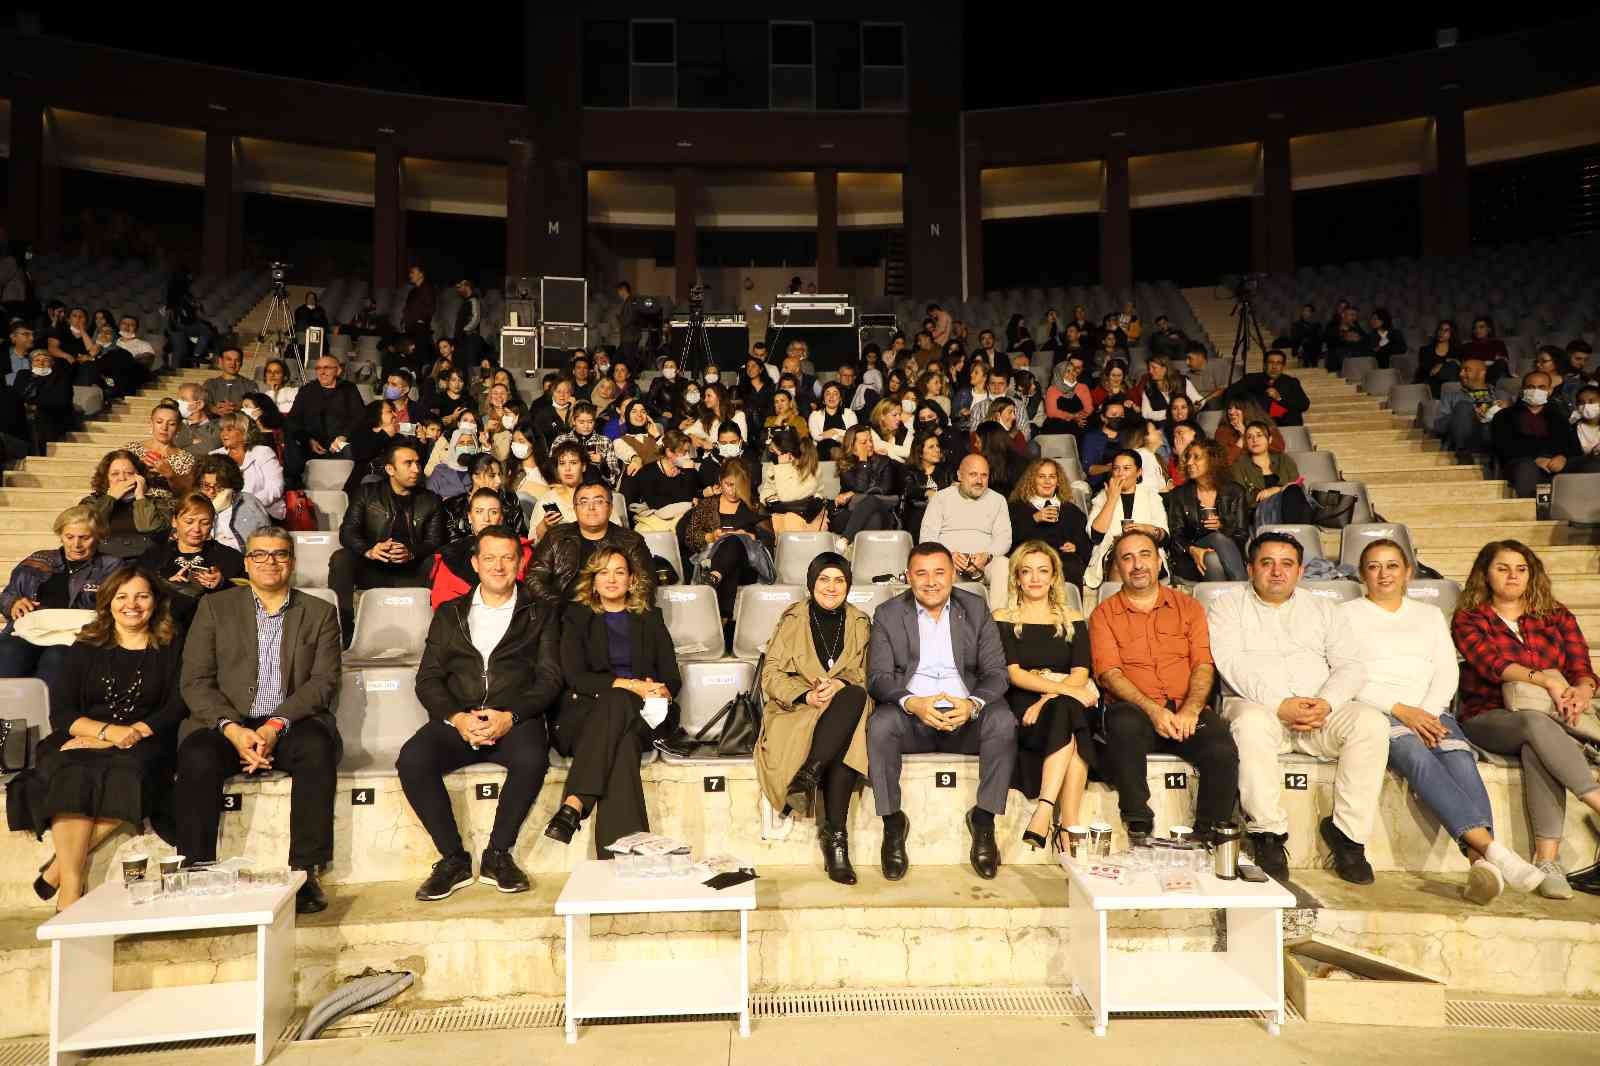 Alanyalı sağlıkçılar, Cenk Eren konseri ile moral buldu #antalya